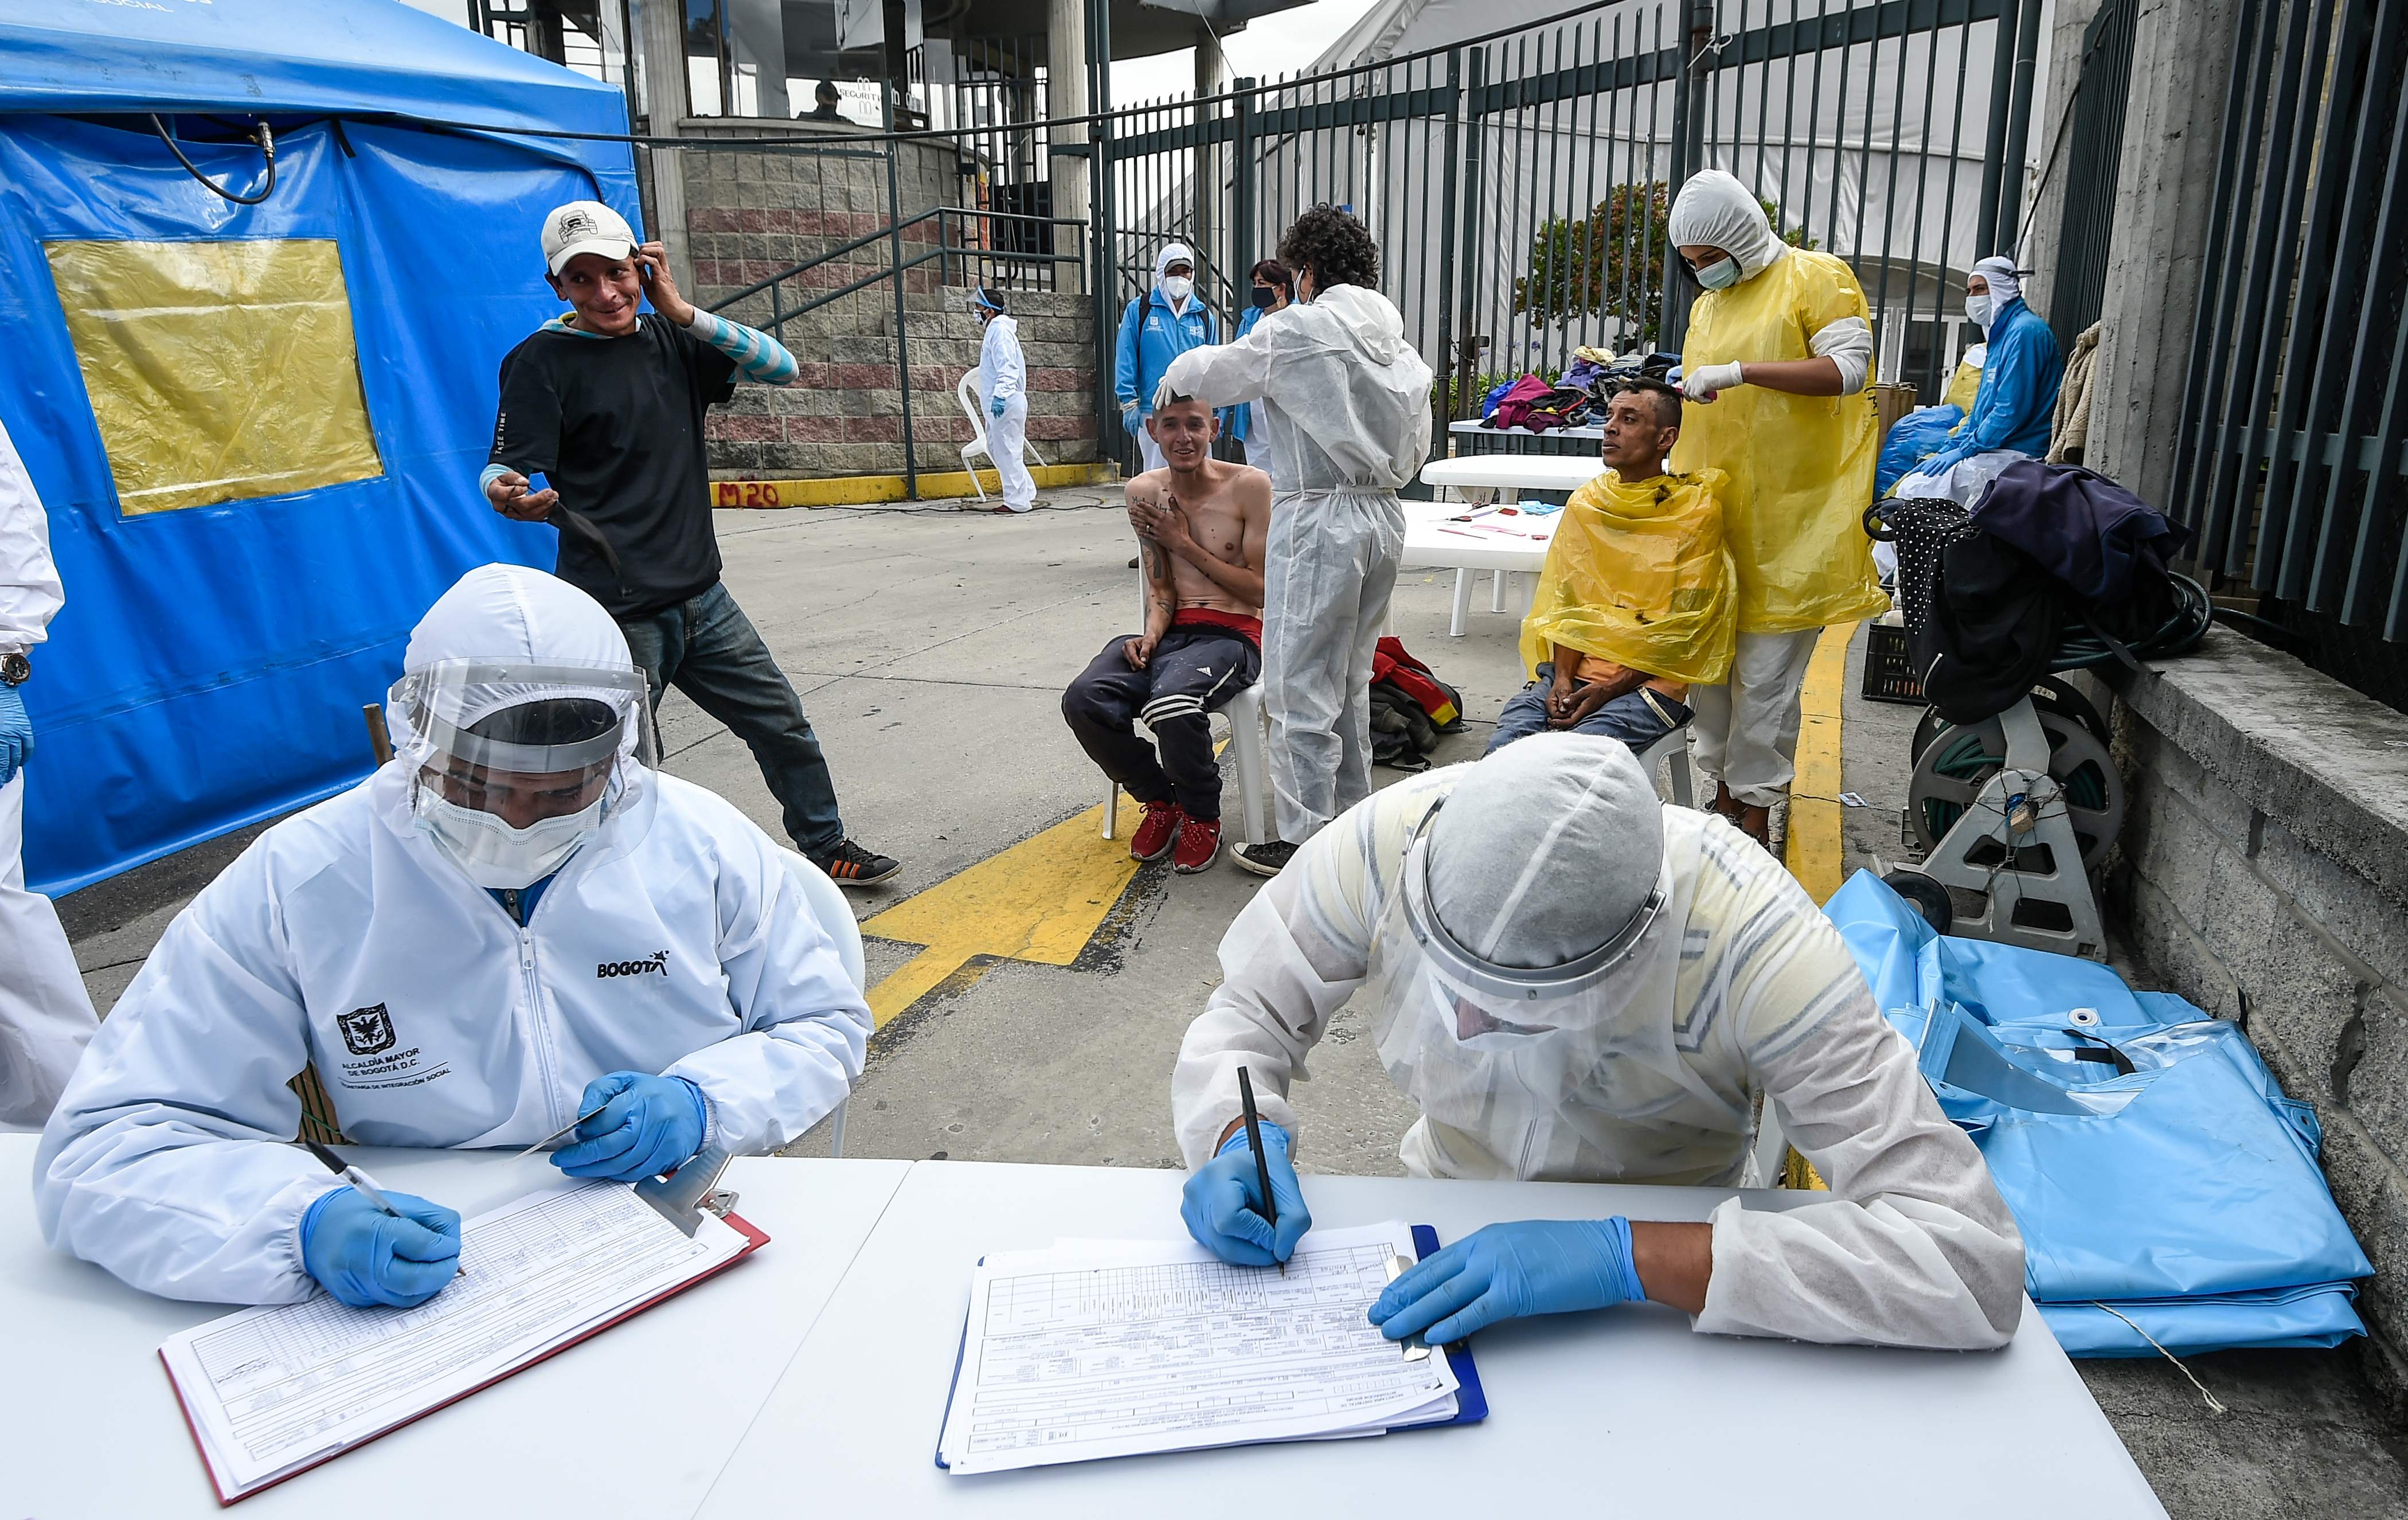 Trabajadores que ayudan a personas sin hogar usan equipo de protección personal contra la propagación del nuevo coronavirus, este 20 de mayo de 2020 en Bogotá, Colombia. (Foto Prensa Libre: AFP)